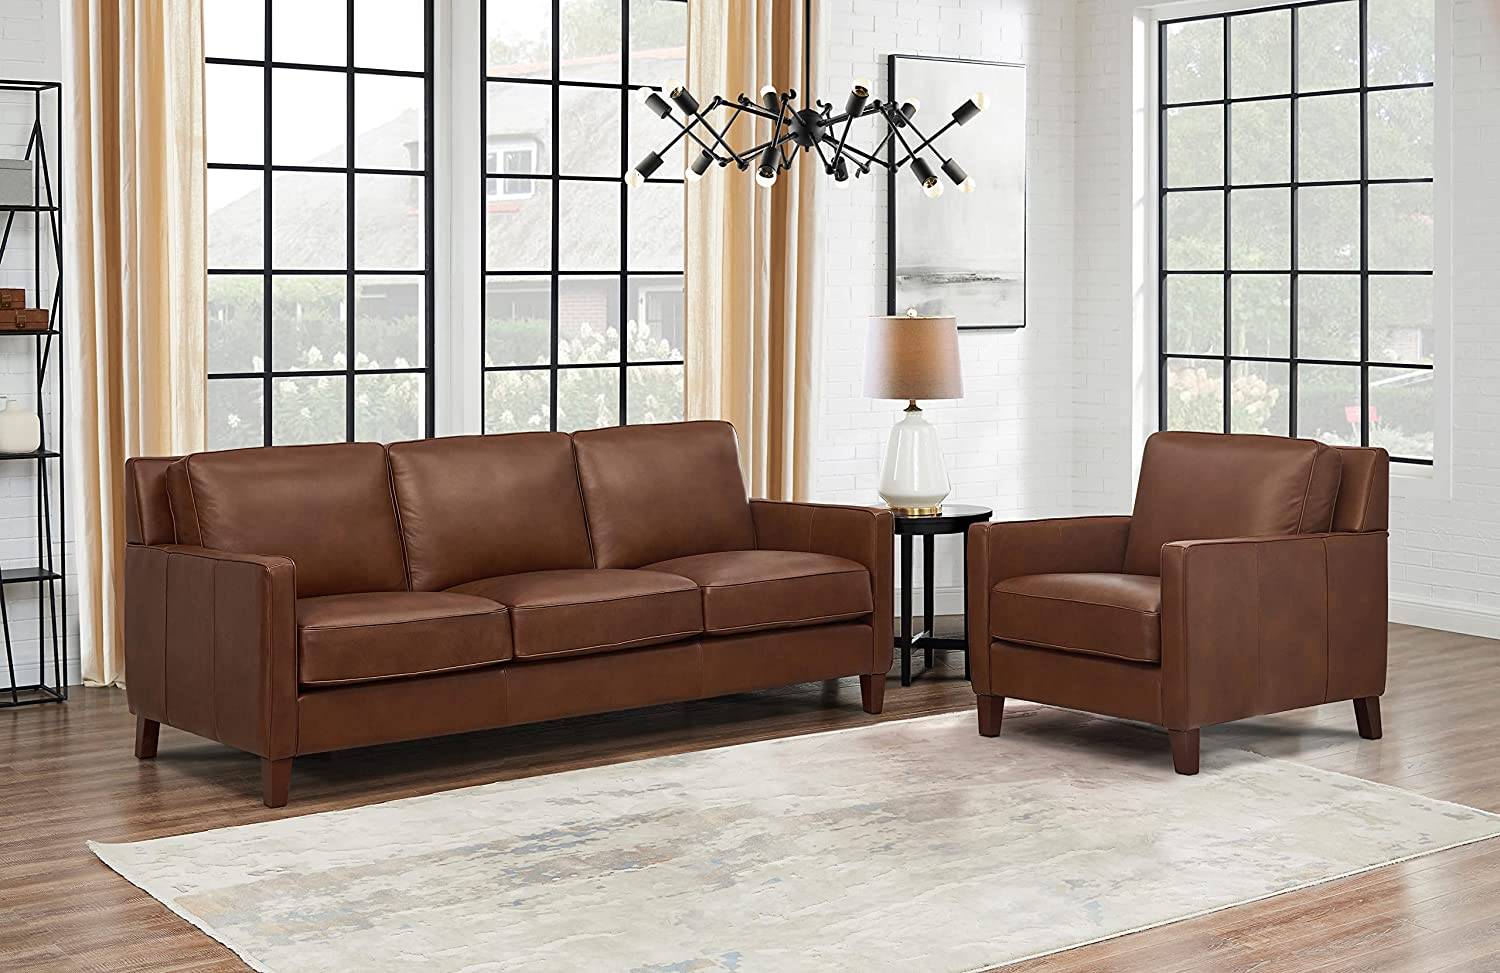 Sofa Ashby với đường nét "sạch sẽ" và thiết kế hợp lý, phù hợp với rất nhiều phong cách nội thất khác nhau. Loại sofa này hiện có nhiều màu sắc để bạn thỏa sức lựa chọn.